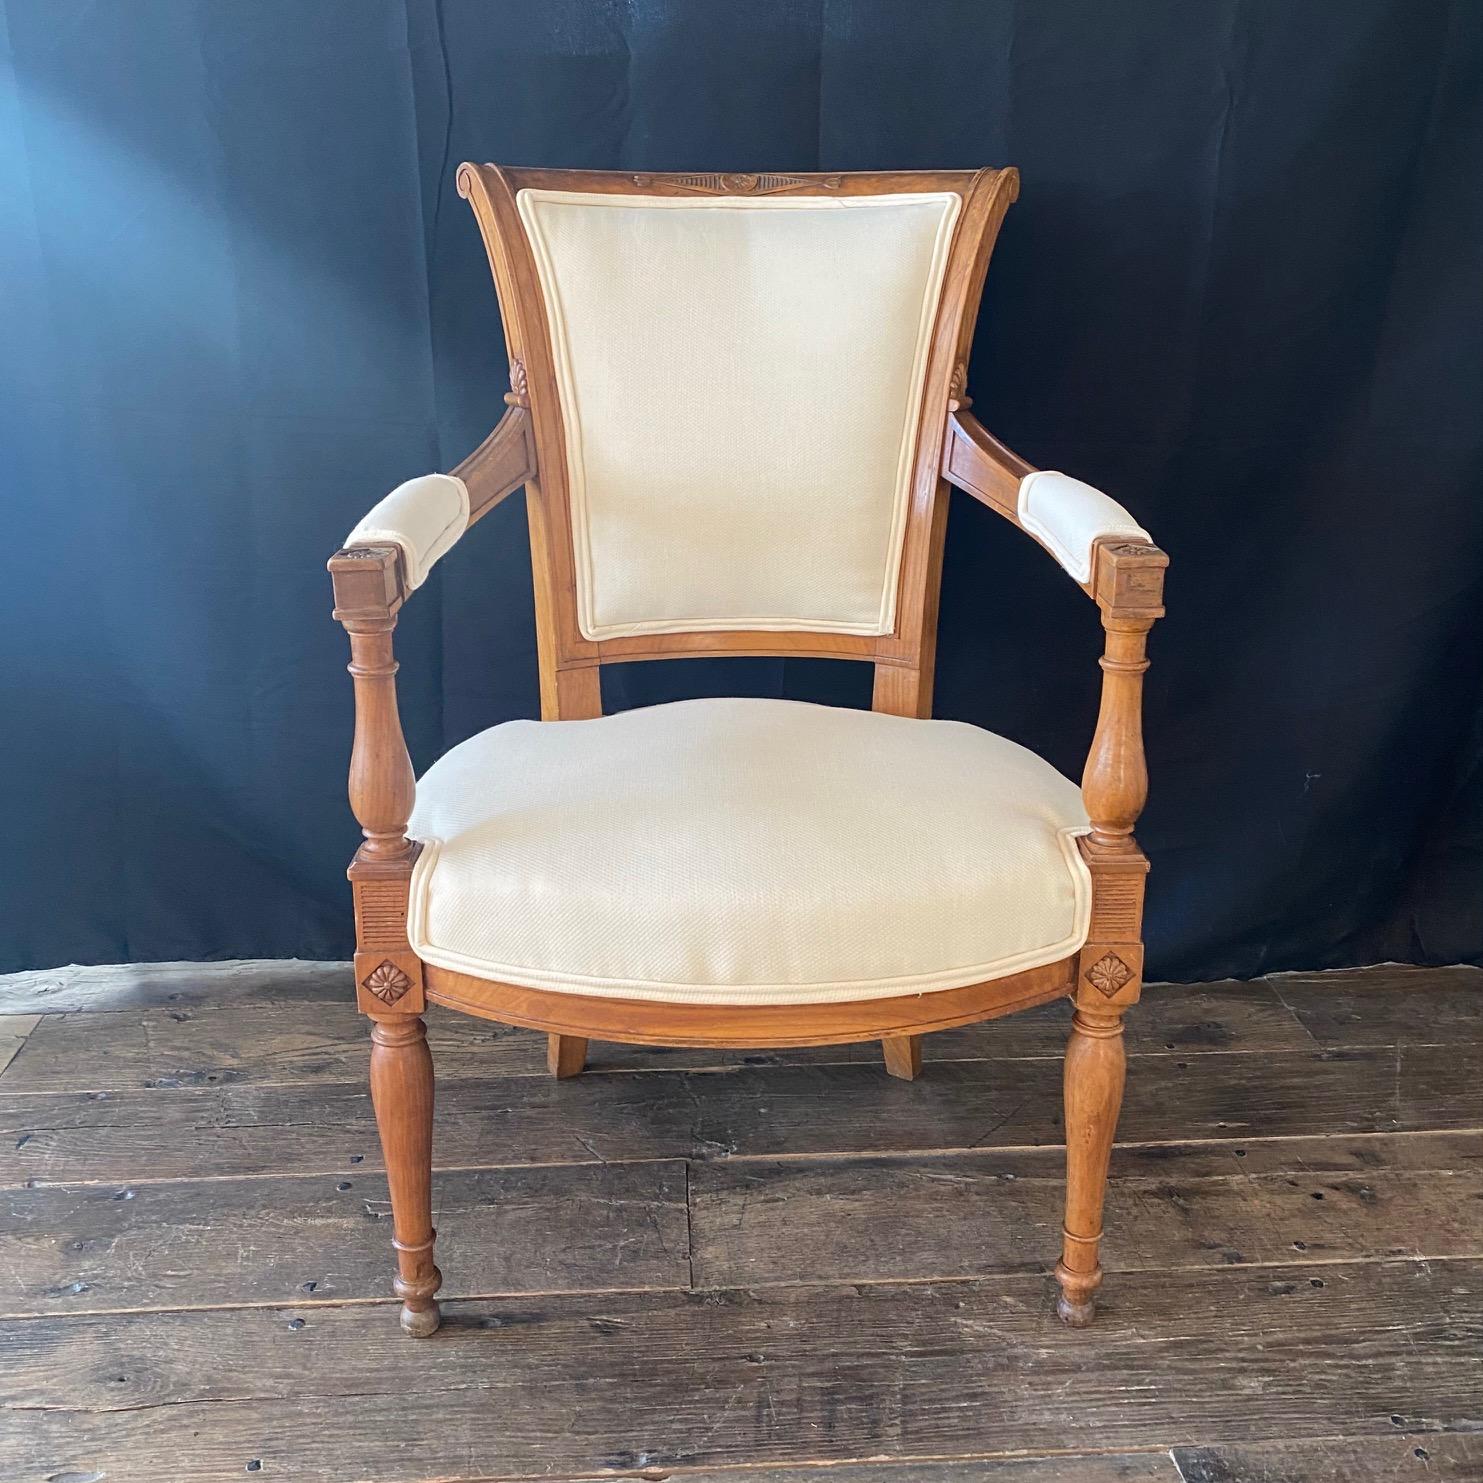 Un bel ensemble de 4 chaises de salle à manger néoclassiques françaises du 19ème siècle de la période Directoire avec de superbes cadres en noyer sculpté (voir les photos pour plus de détails). Les chaises sont recouvertes d'un tissu neutre haut de